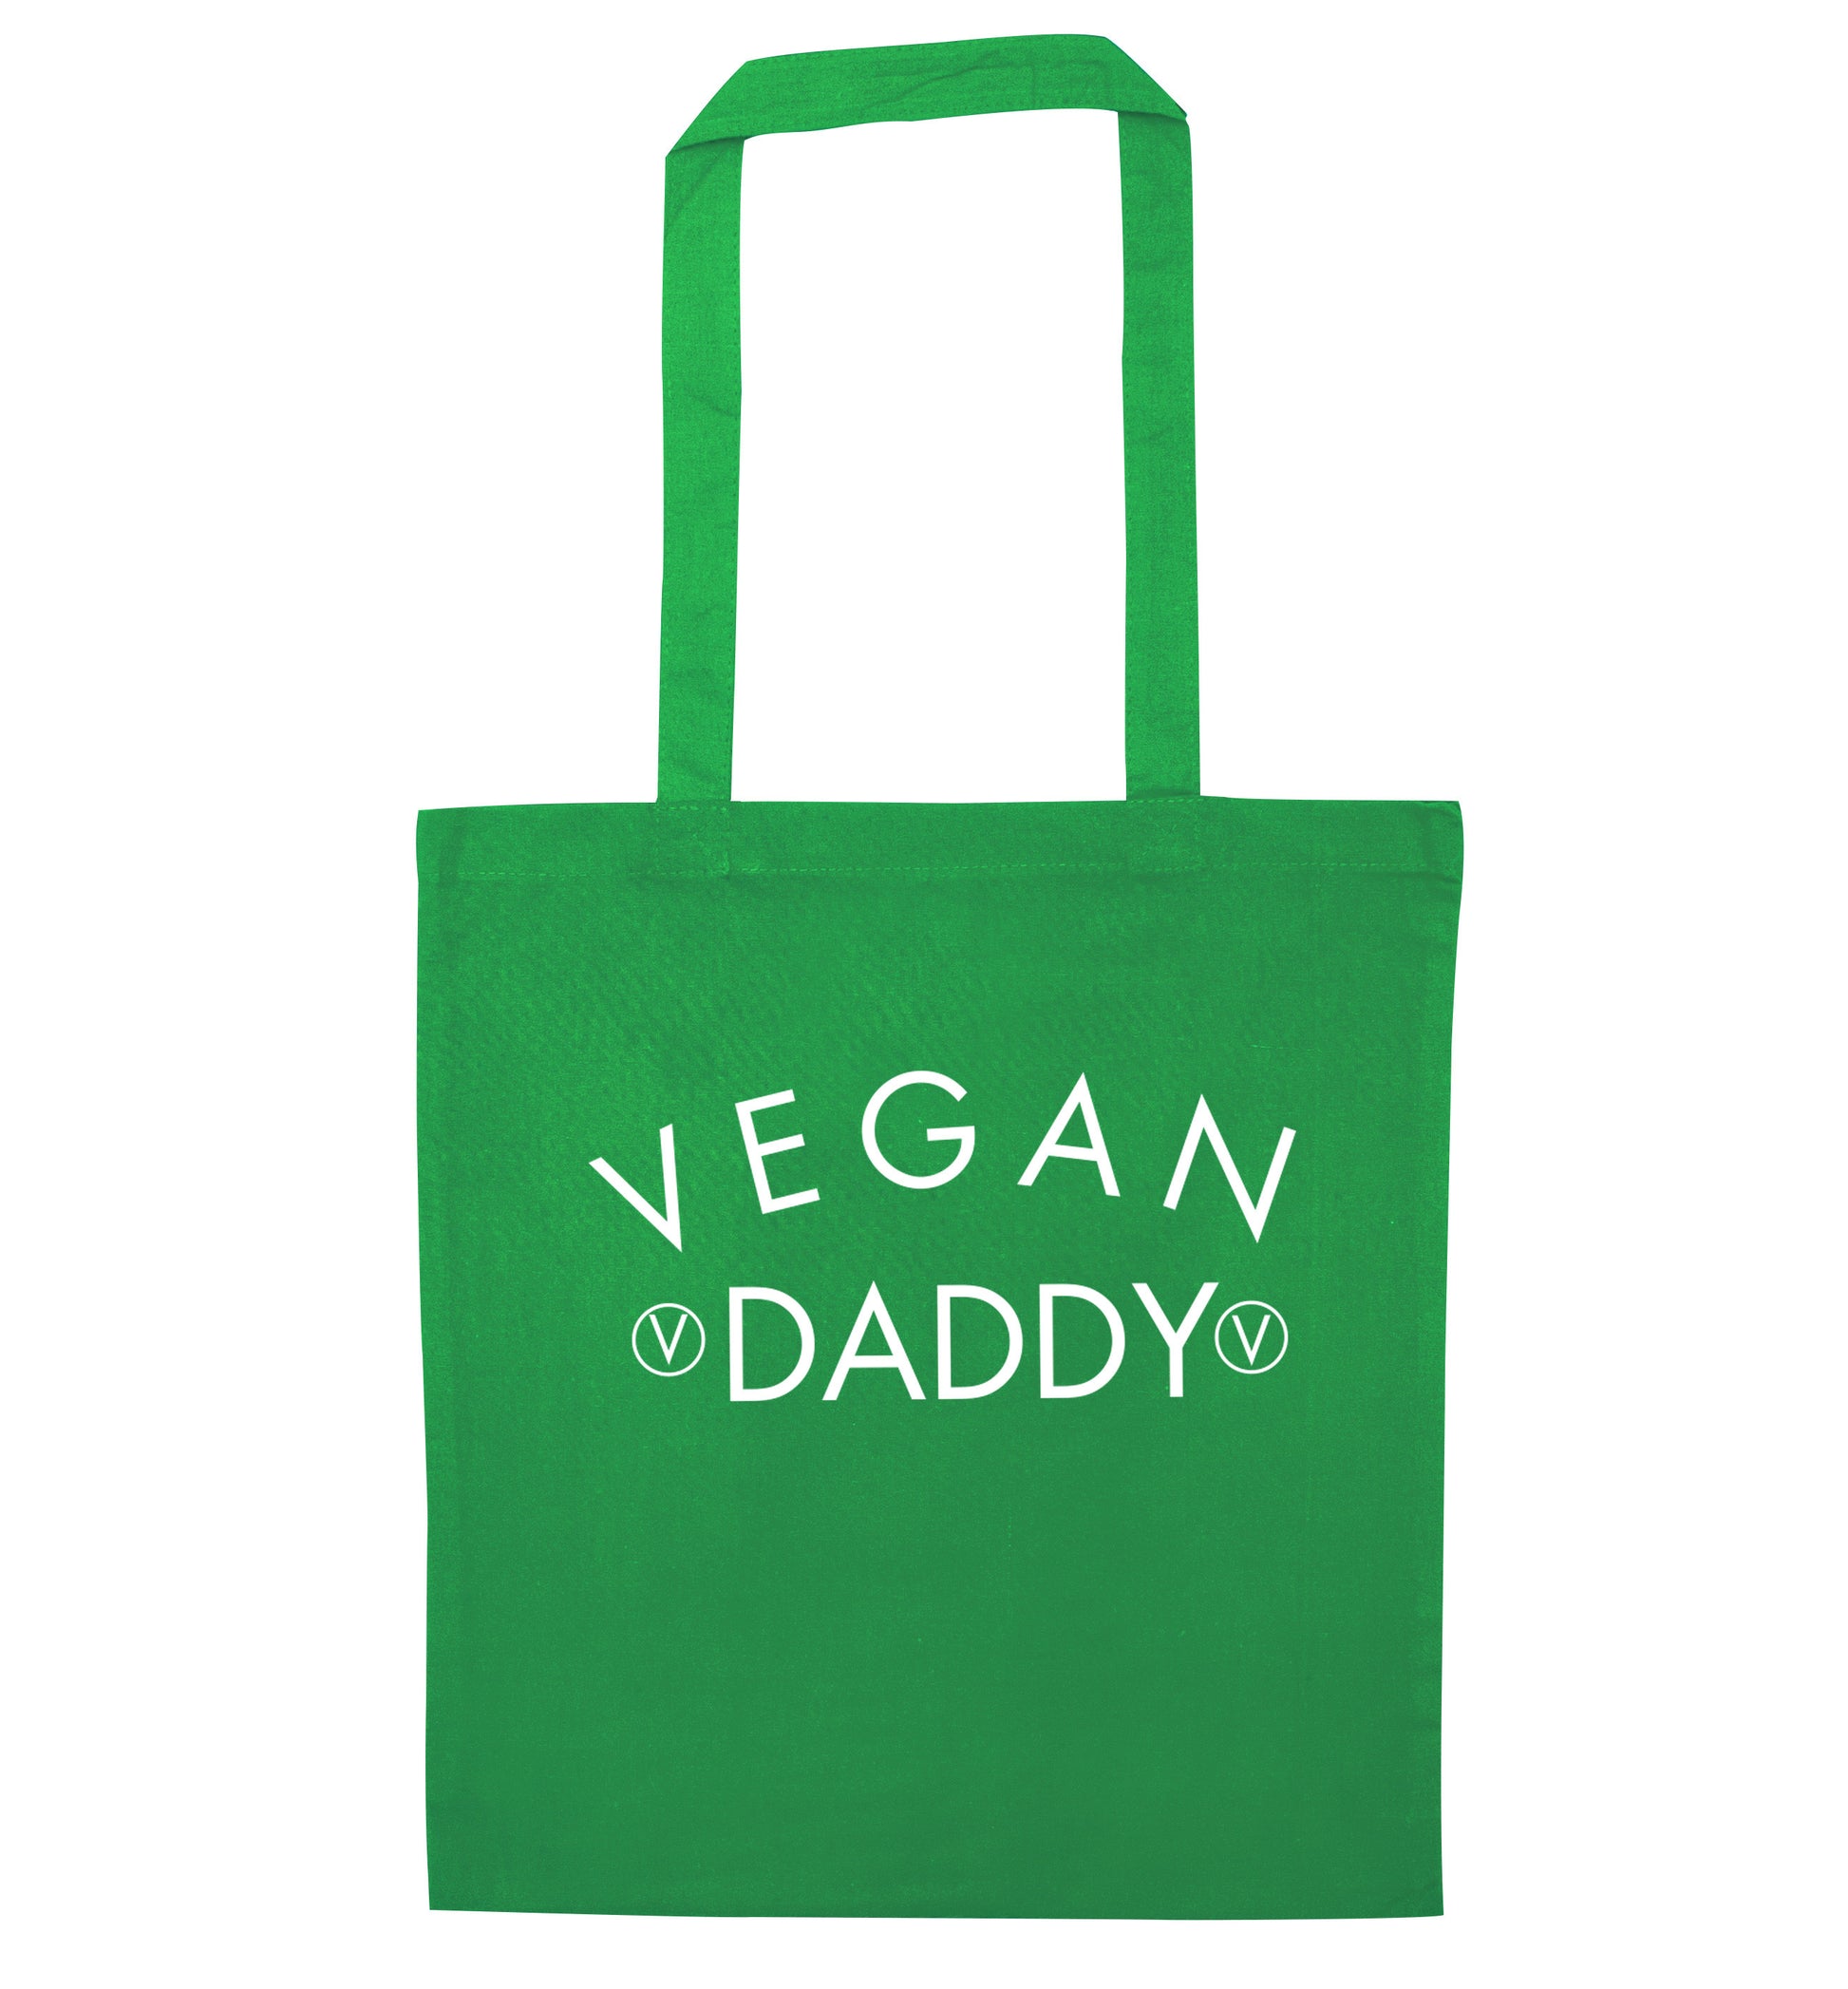 Vegan daddy green tote bag